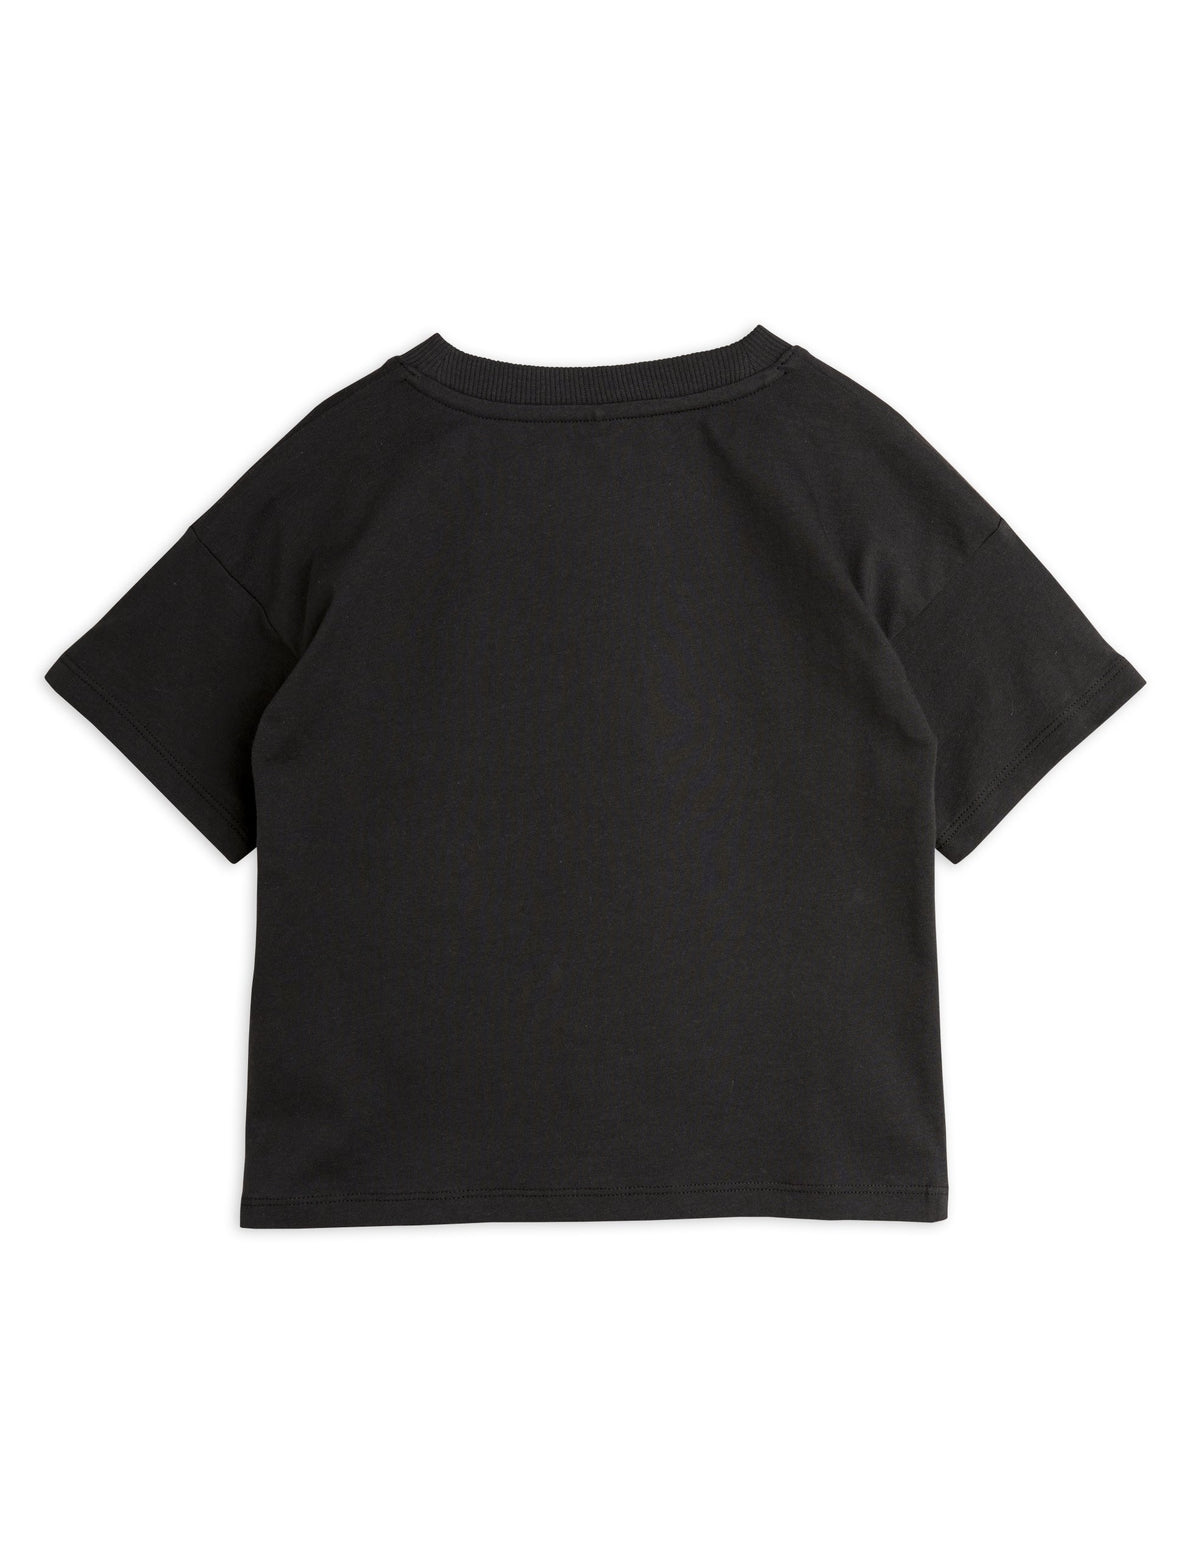 Sport T-shirt black, Mini rodini no